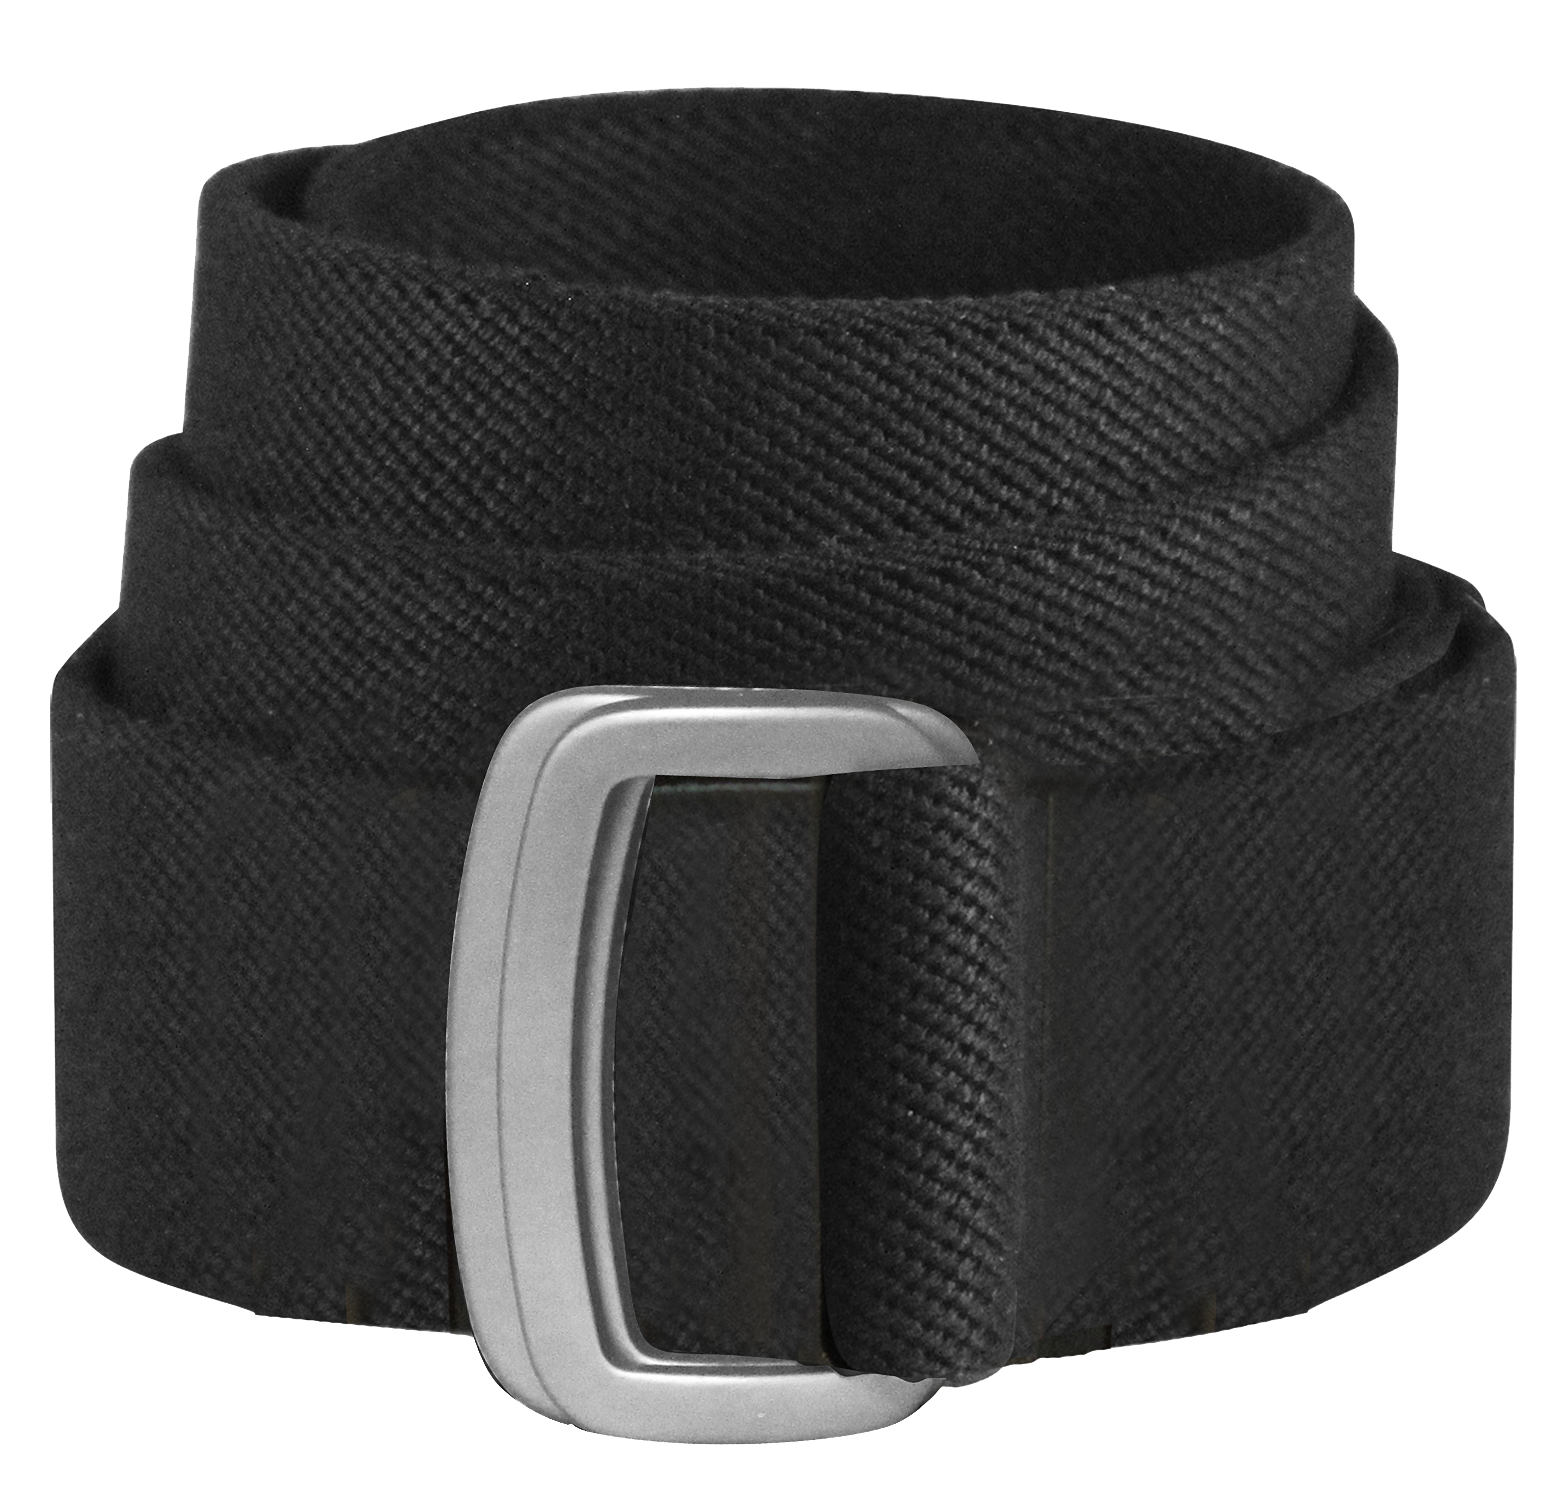 Bison Designs Subtle Cinch Belt for Men - Black - XL